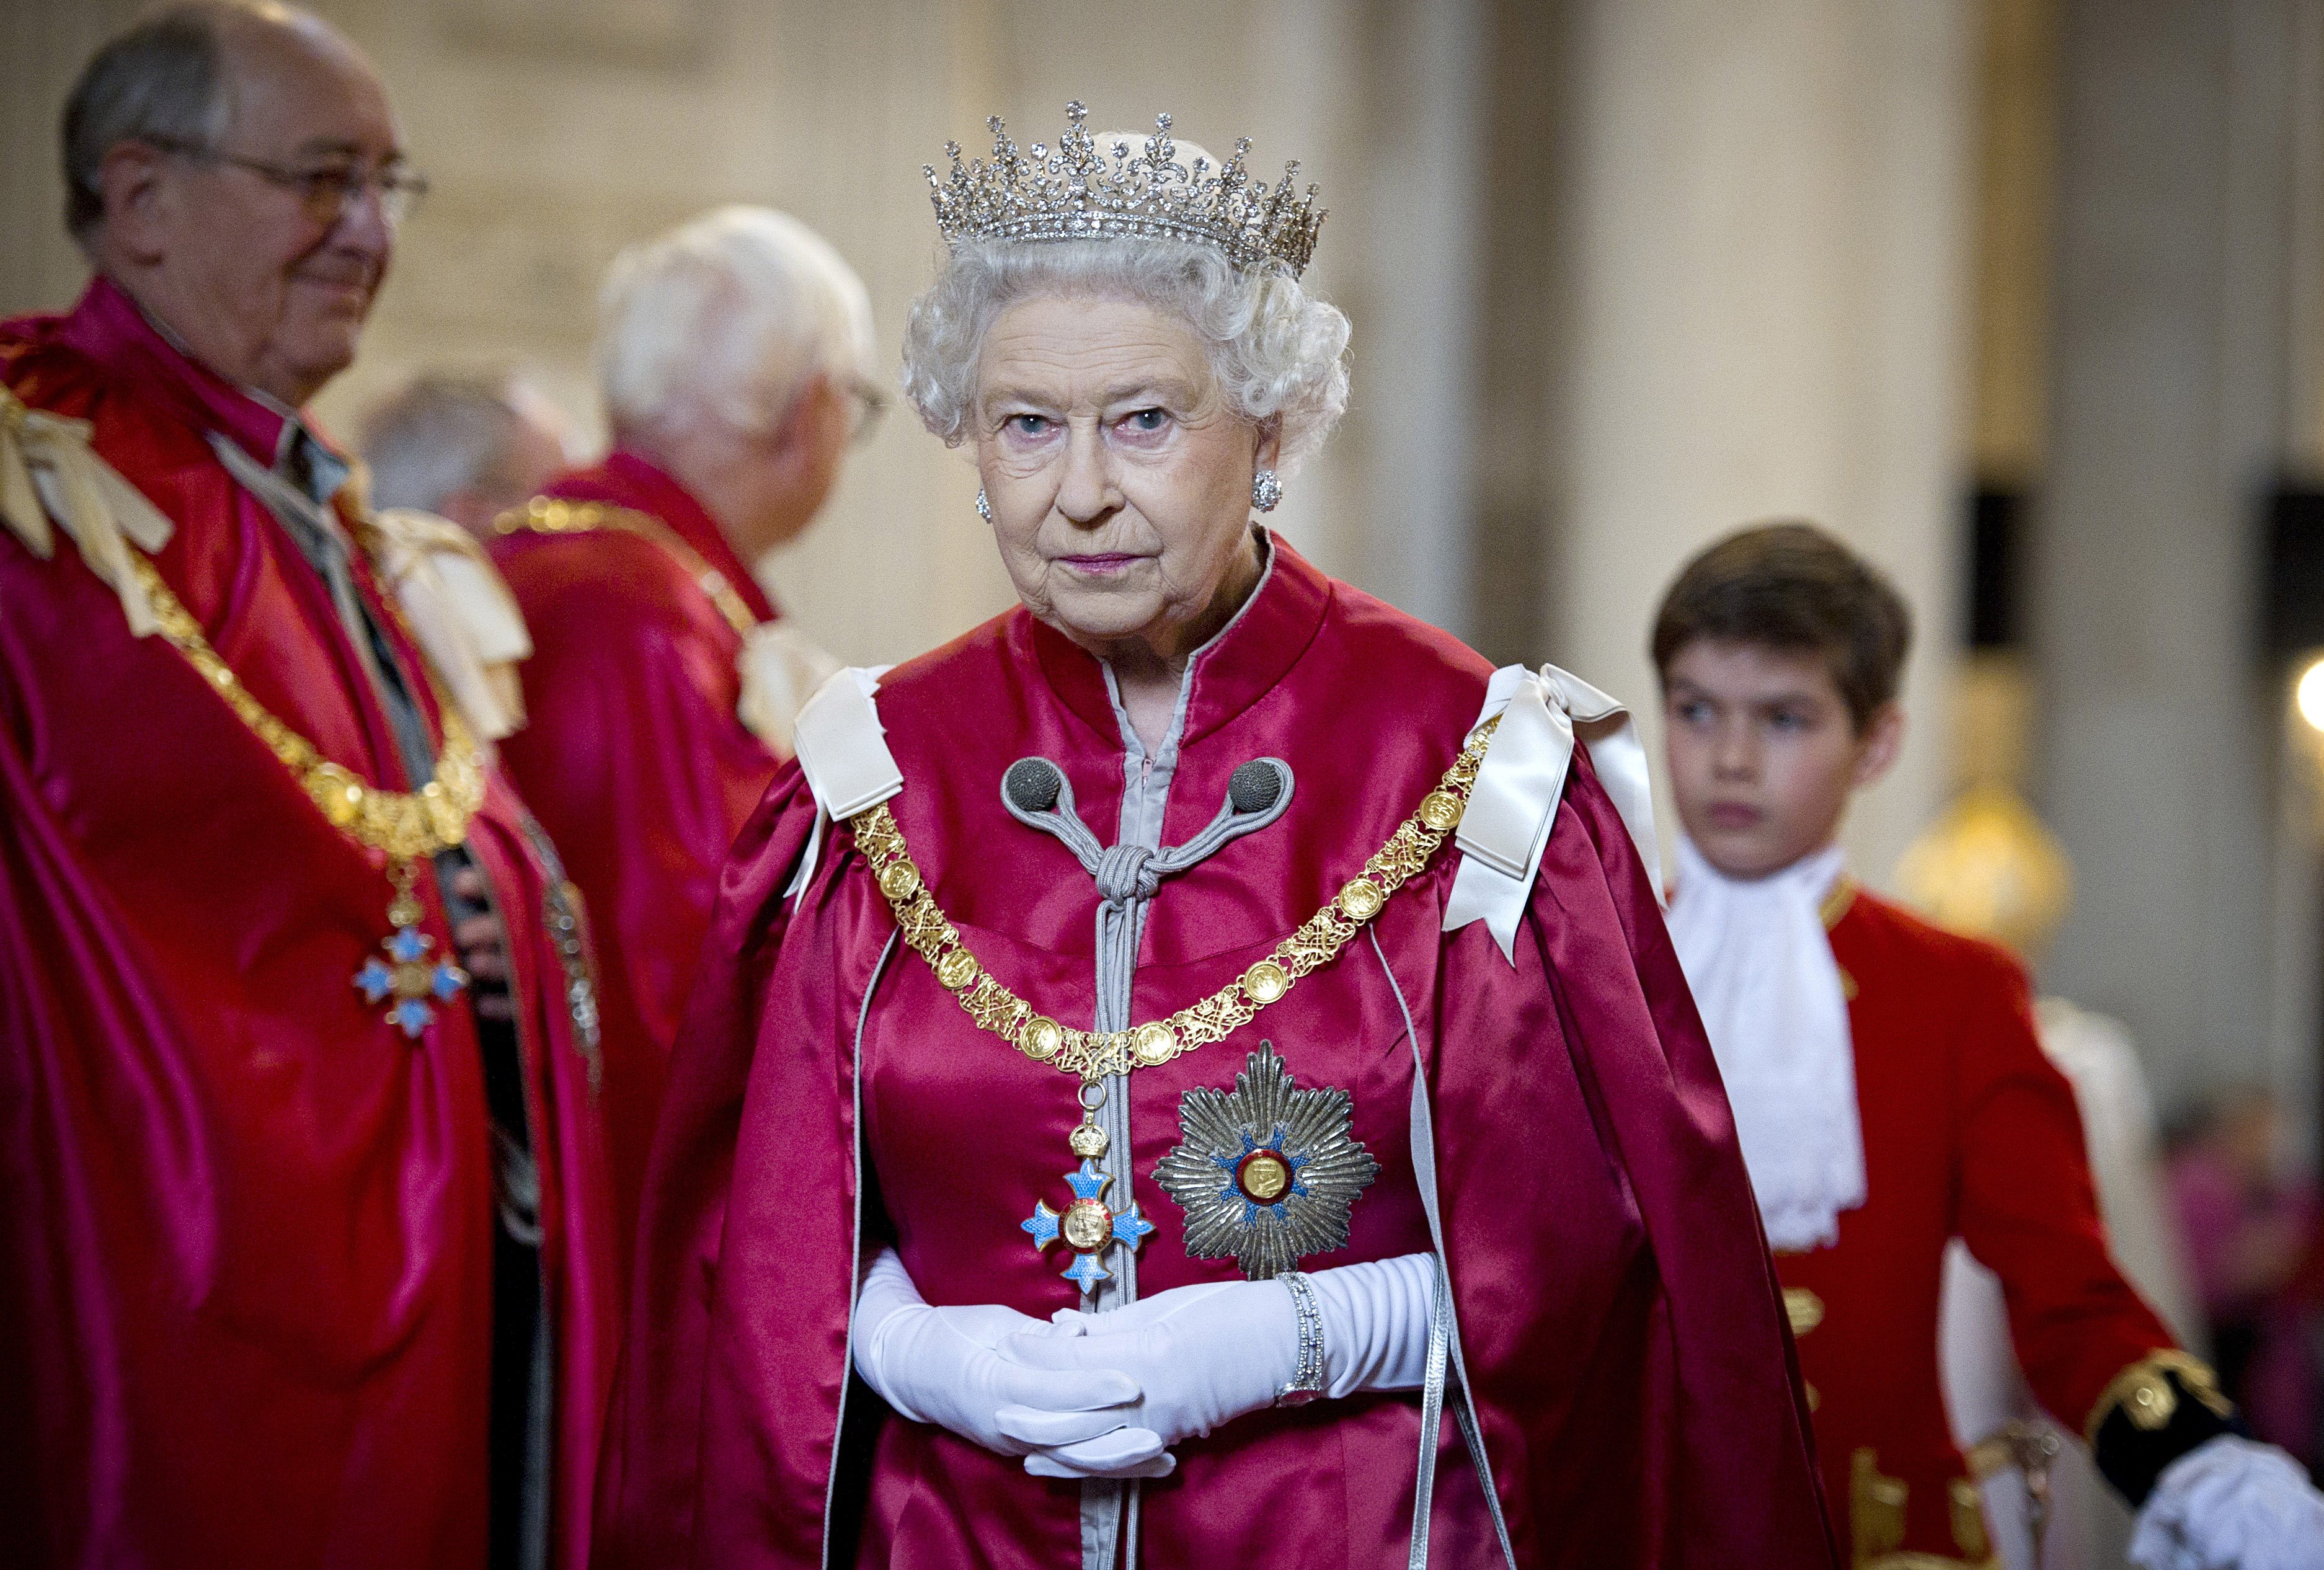 La reina Elizabeth II en un servicio para la Orden del Imperio Británico el 7 de marzo de 2012 en Londres, Inglaterra. | Foto: Getty Images